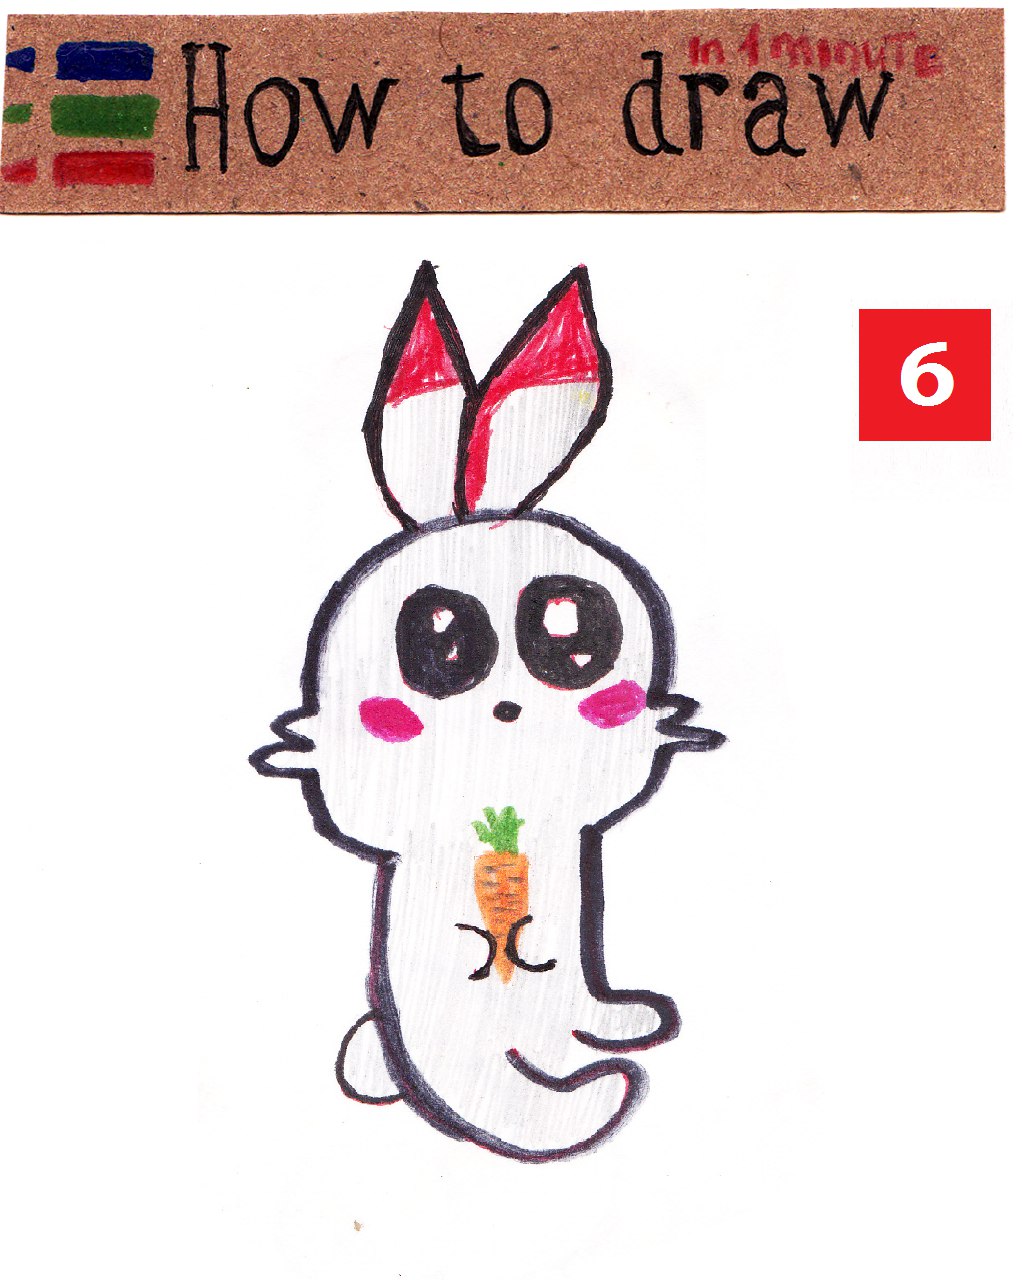 How to draw cute pokemon Scorbunny step by step